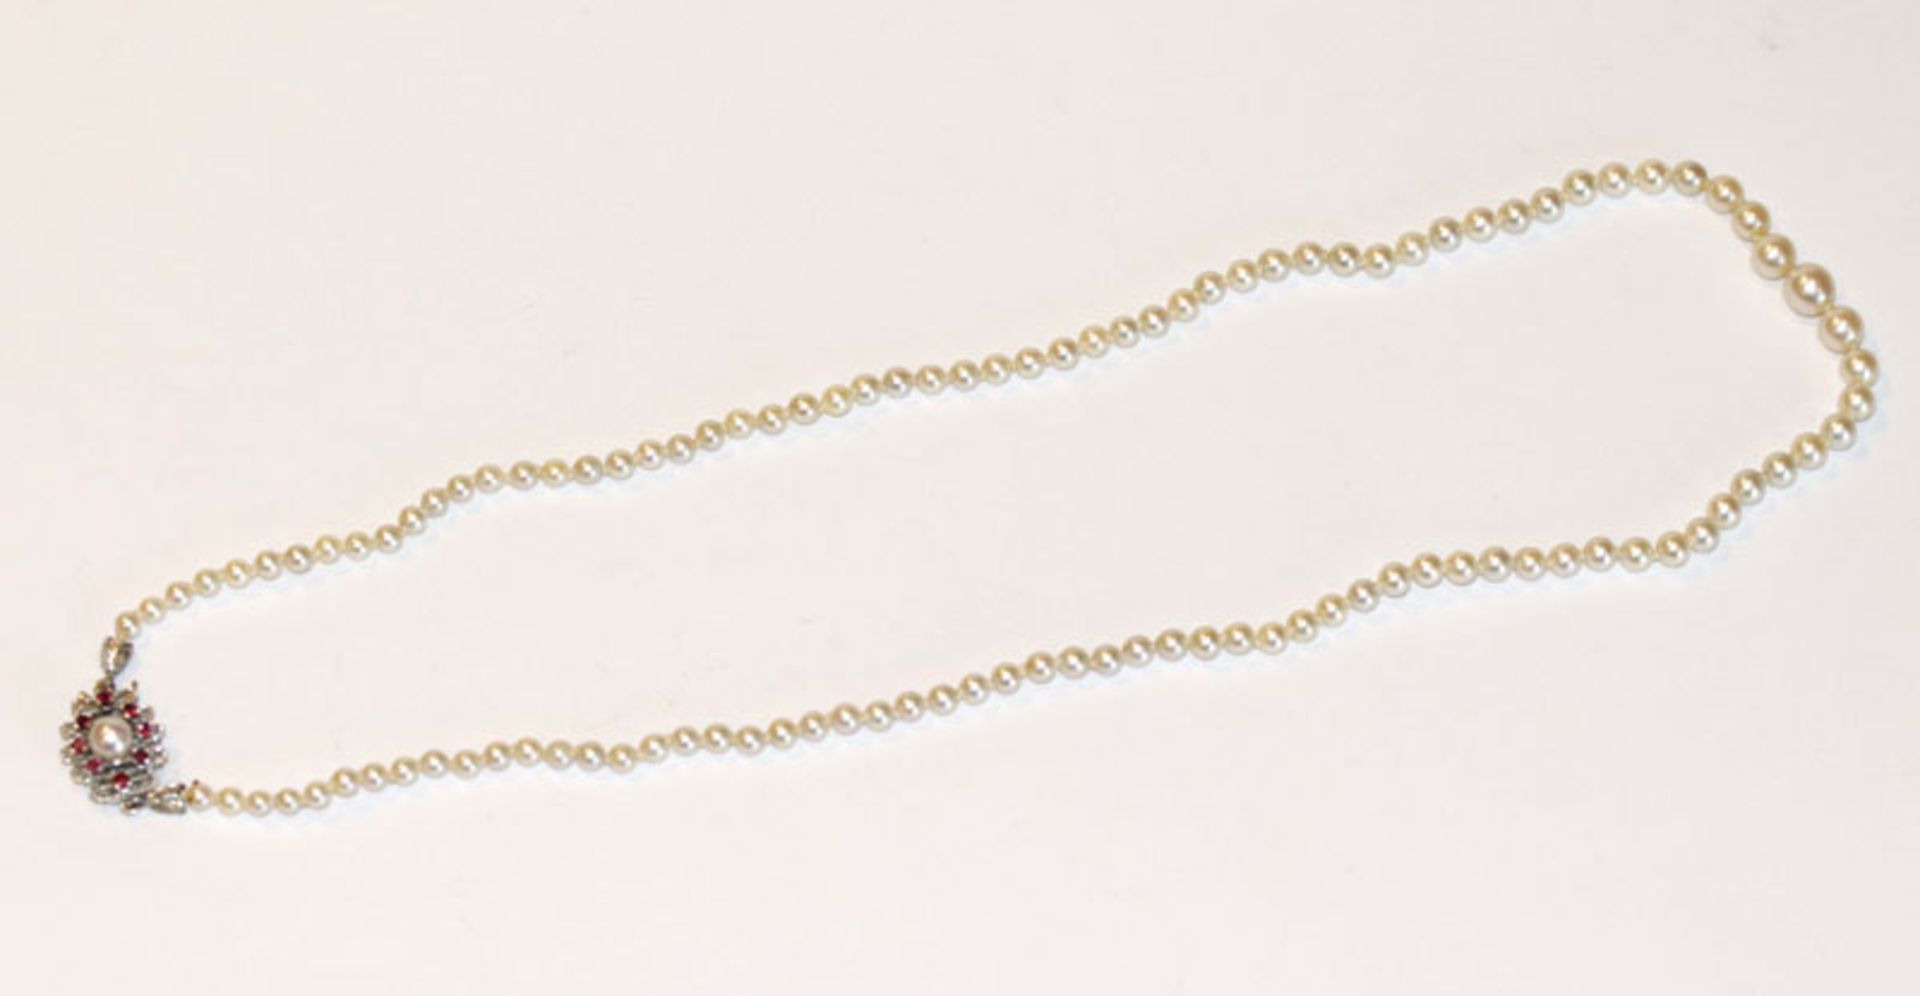 Perlenkette in Verlaufform mit 14 k Weißgoldschließe, besetzt mit Perle und 8 Rubinen, L 46 cm